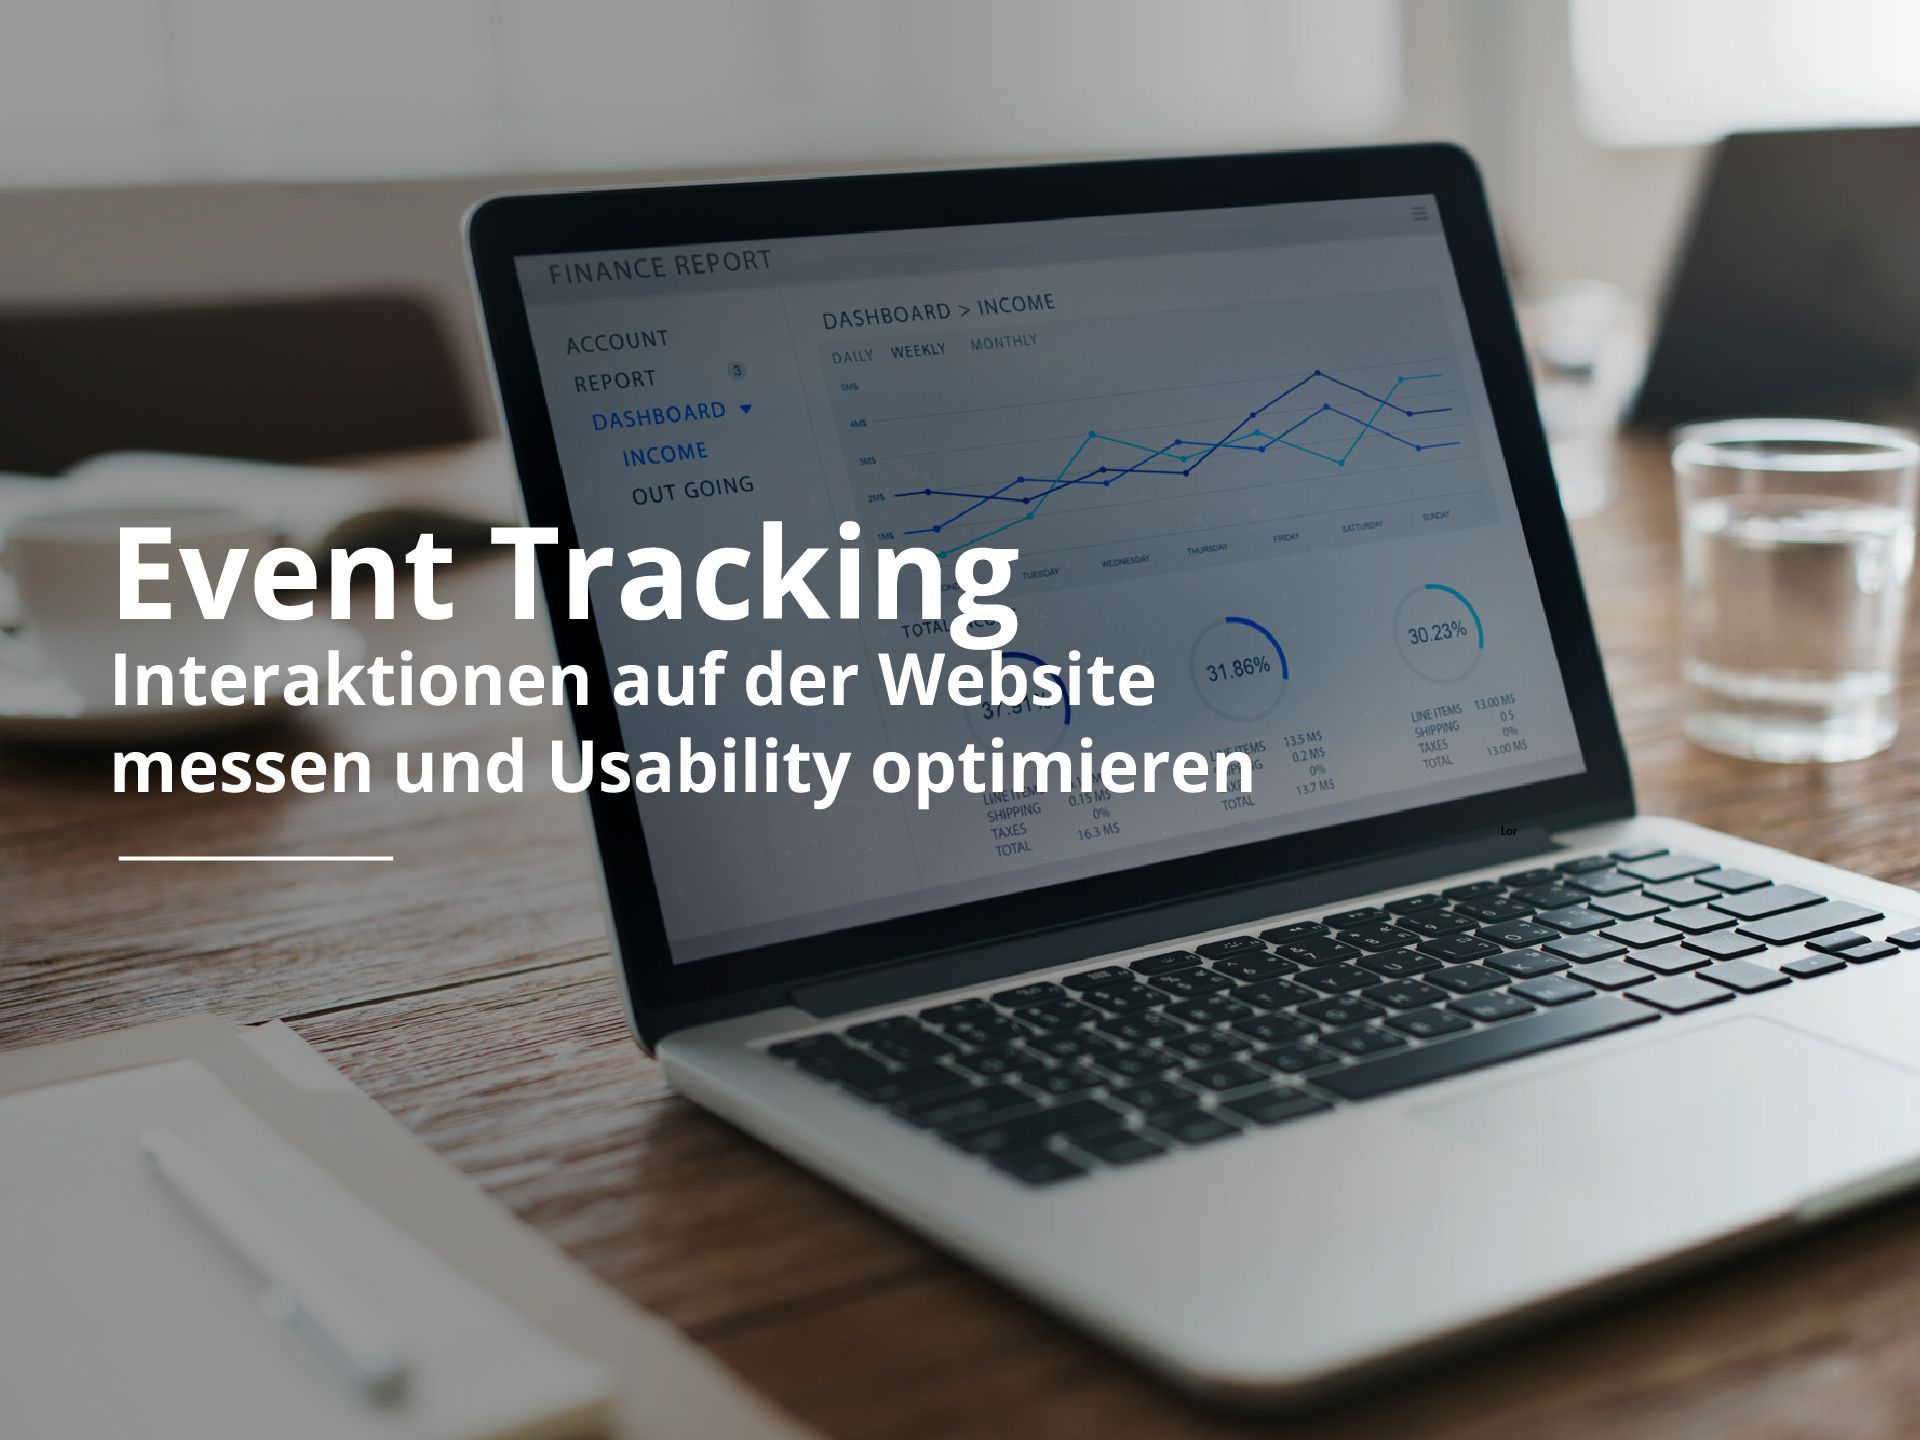 Event Tracking: Interaktionen auf der Website messen und Usability optimieren